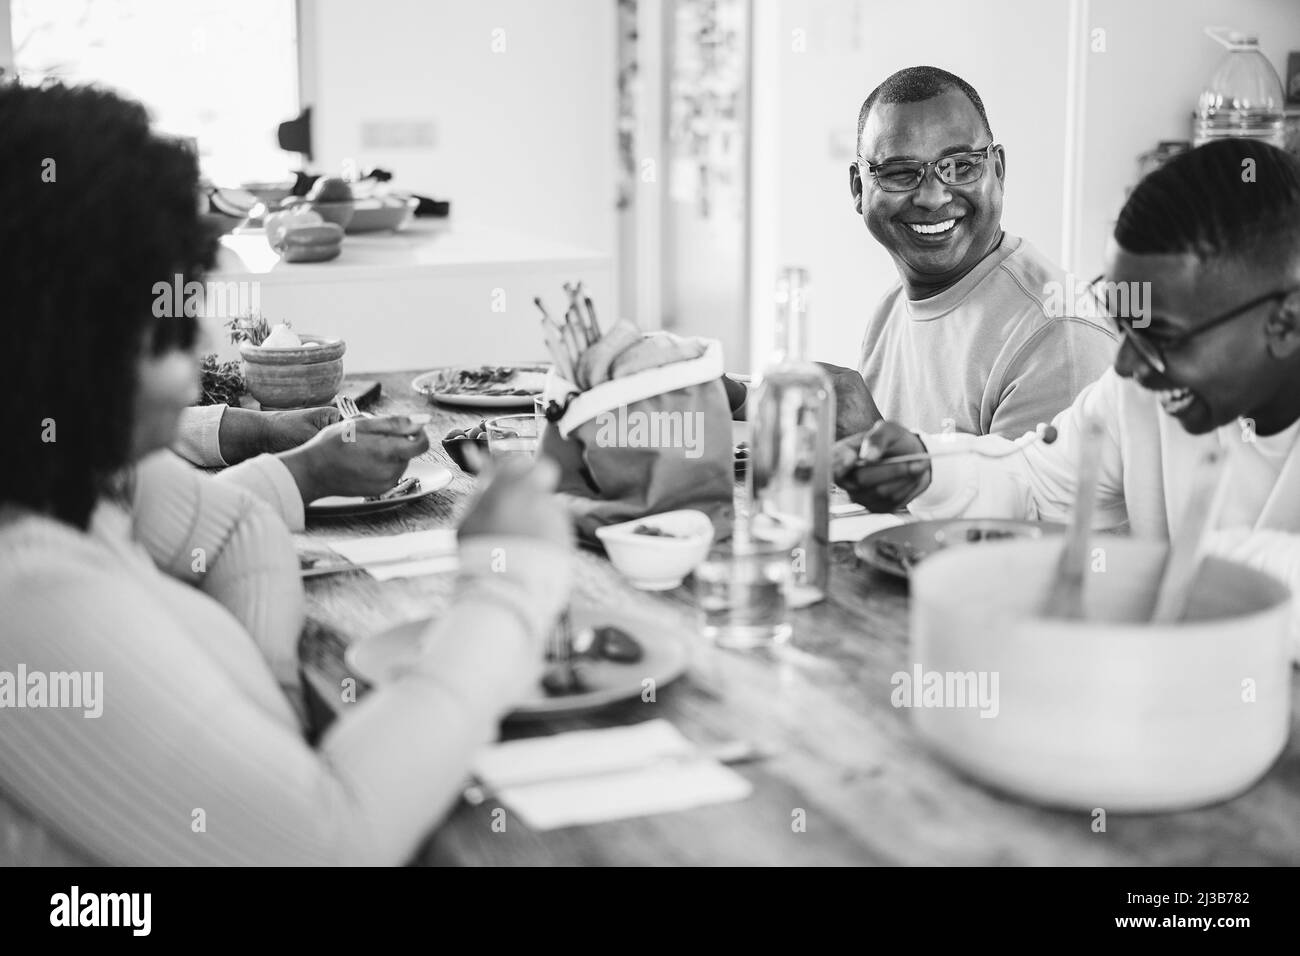 Happy african Family déjeuner ensemble à la maison - Focus sur le visage du père - montage noir et blanc Banque D'Images